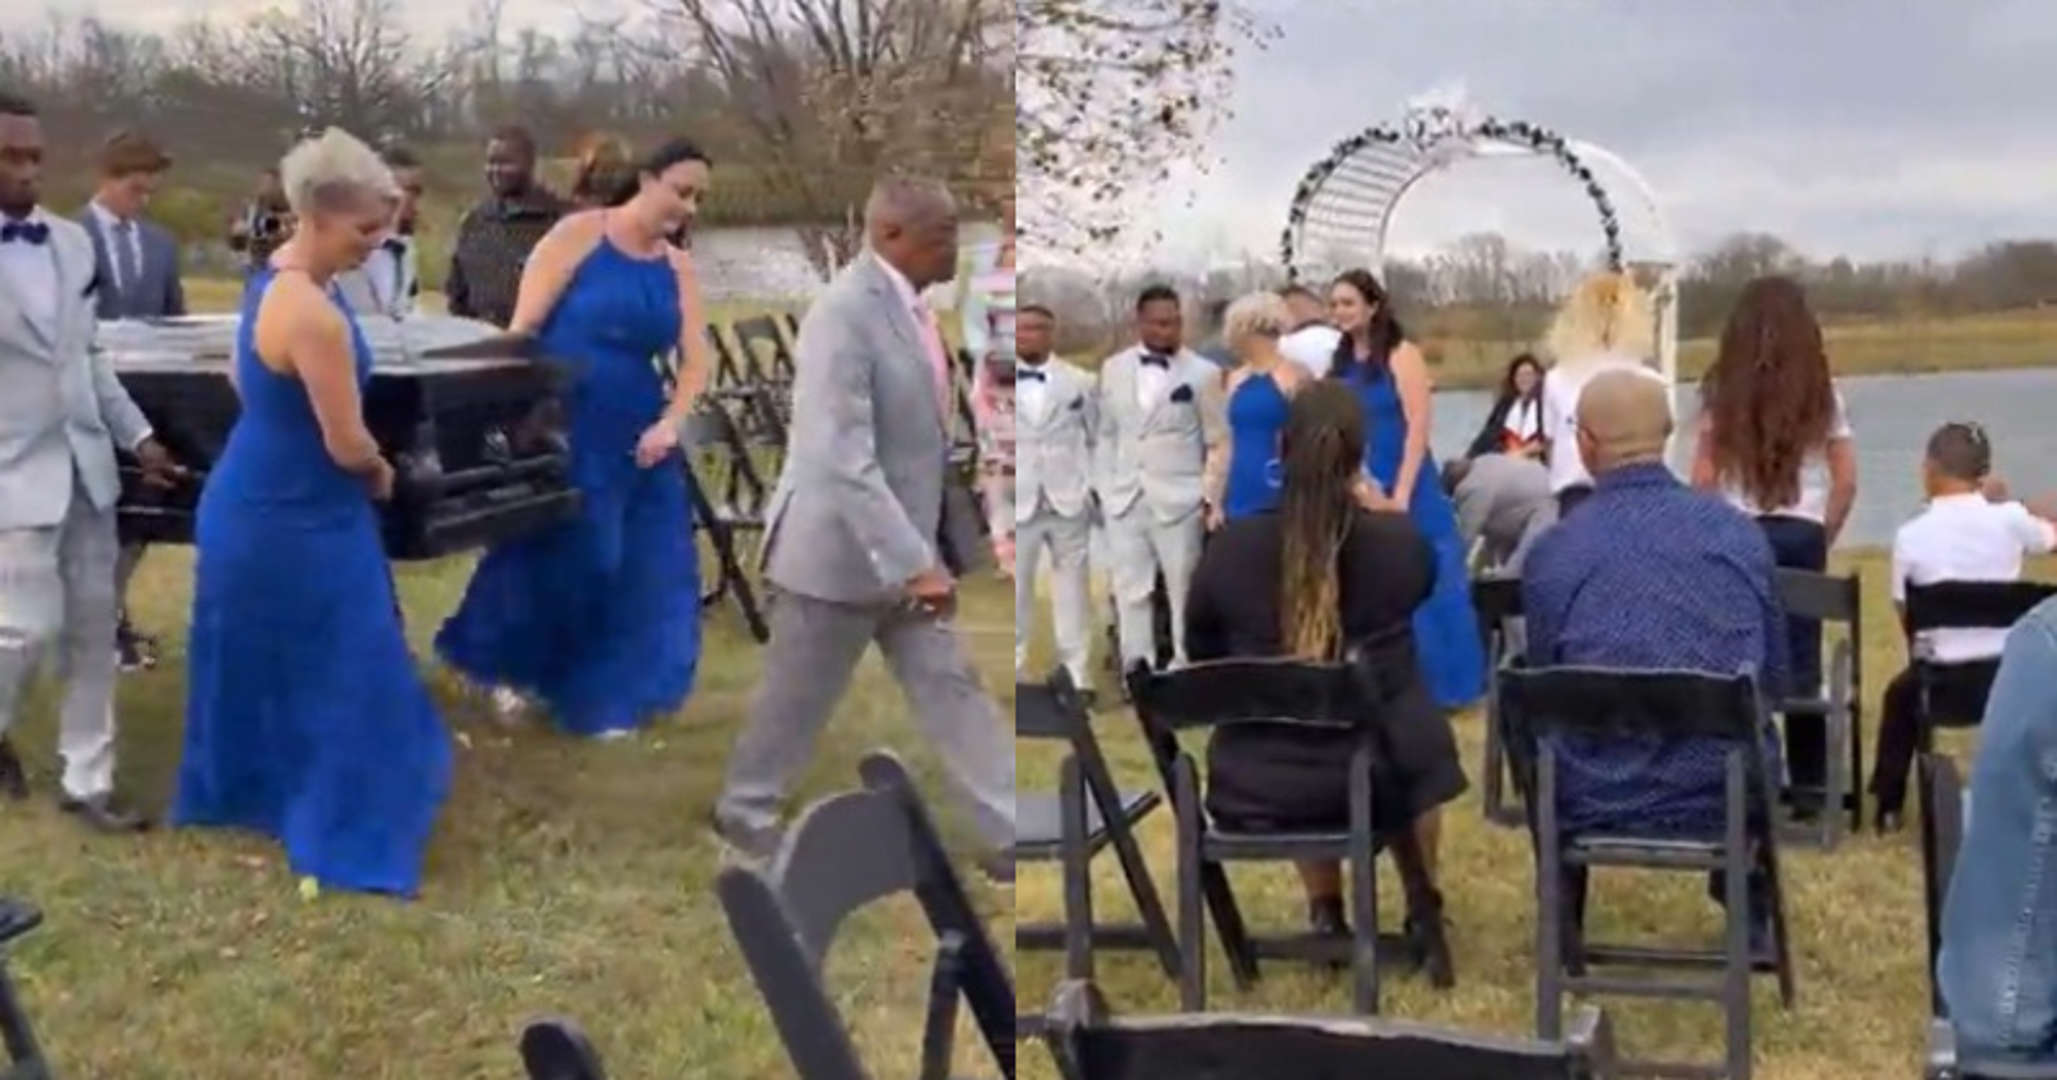 Pengantin datang ke majlis perkahwinan menaiki keranda, netizen berang